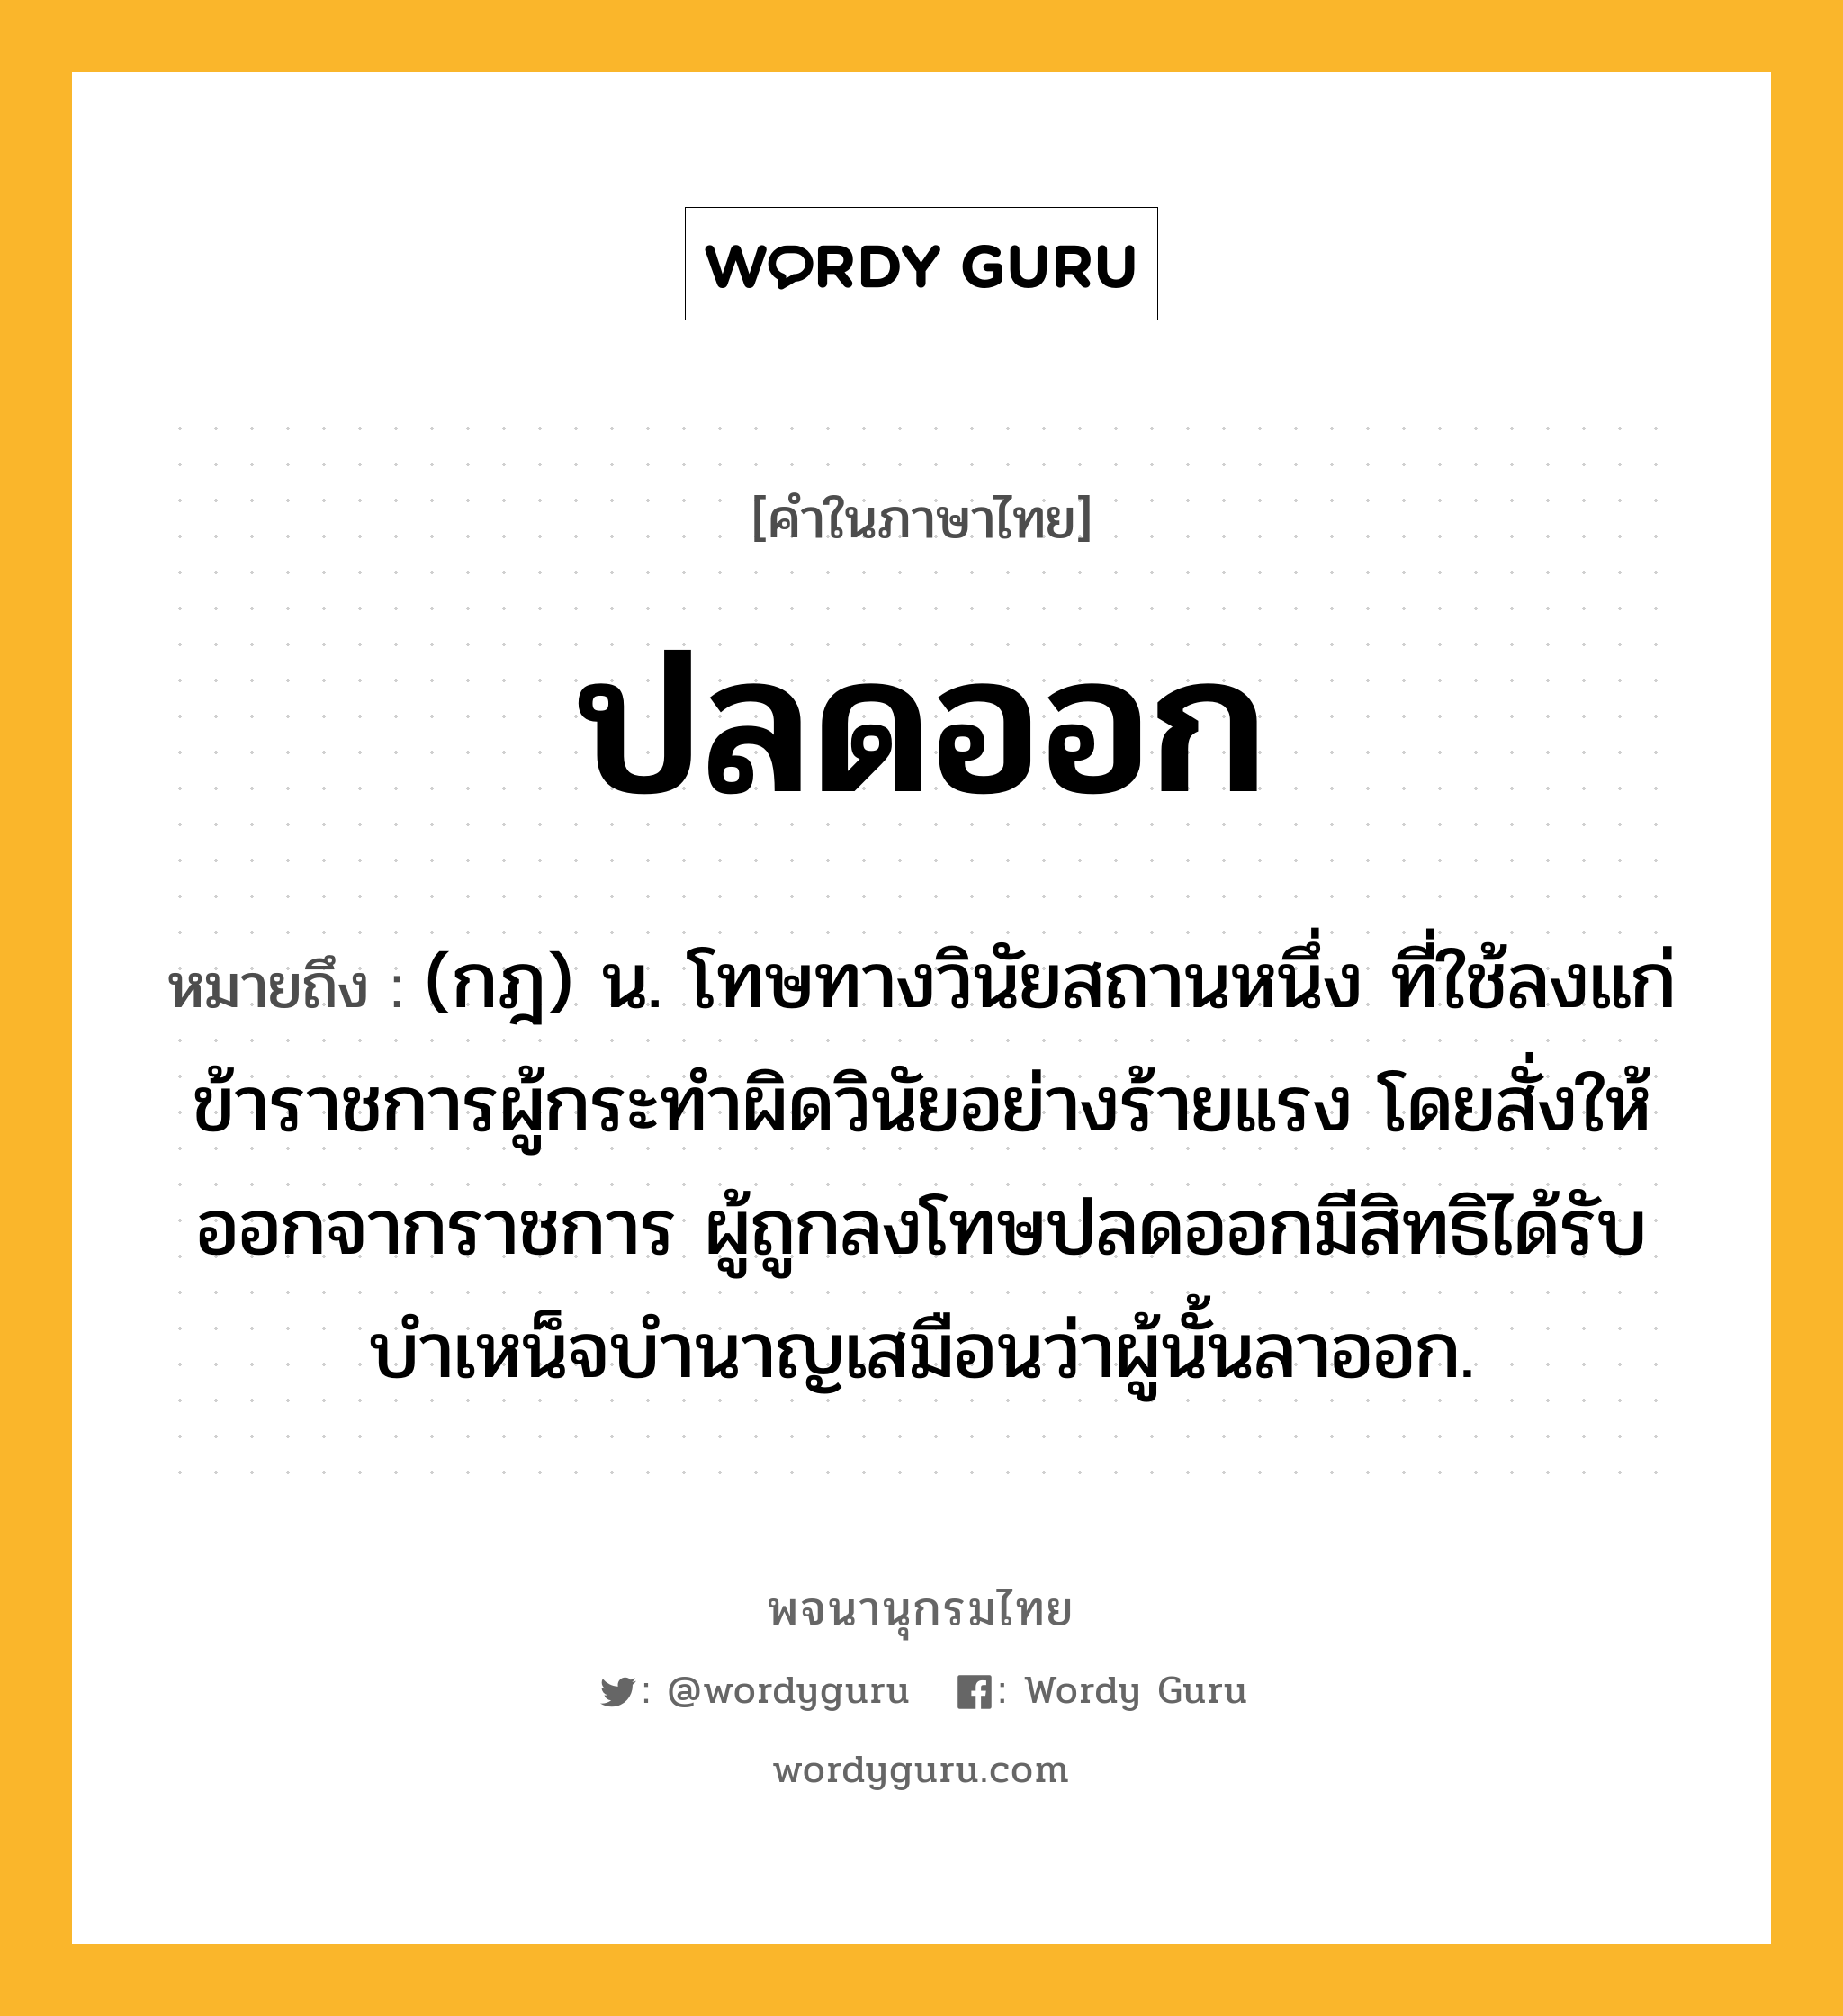 ปลดออก ความหมาย หมายถึงอะไร?, คำในภาษาไทย ปลดออก หมายถึง (กฎ) น. โทษทางวินัยสถานหนึ่ง ที่ใช้ลงแก่ข้าราชการผู้กระทําผิดวินัยอย่างร้ายแรง โดยสั่งให้ออกจากราชการ ผู้ถูกลงโทษปลดออกมีสิทธิได้รับบําเหน็จบํานาญเสมือนว่าผู้นั้นลาออก.